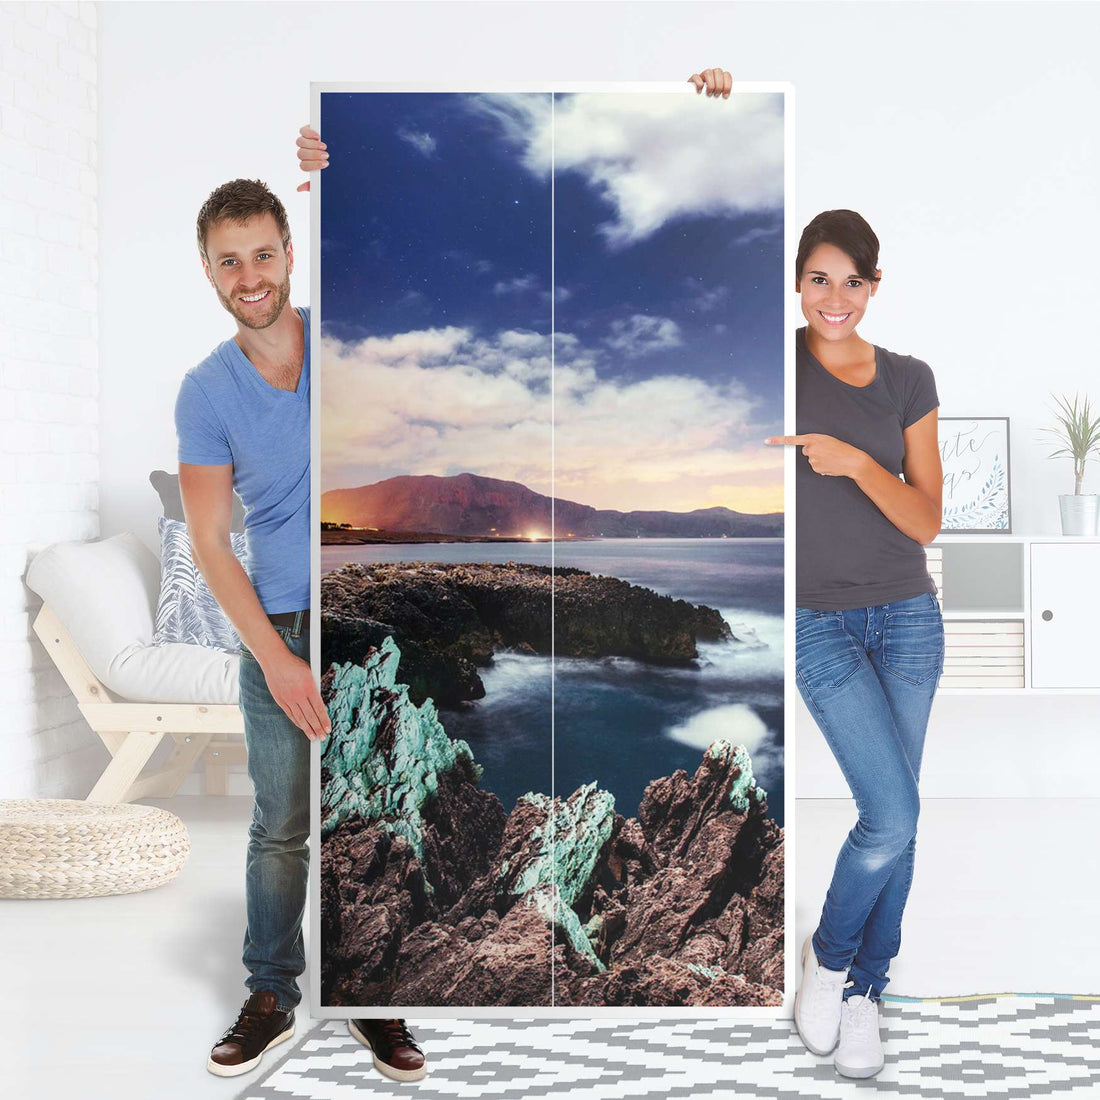 Klebefolie für Möbel Seaside - IKEA Pax Schrank 201 cm Höhe - 2 Türen - Folie